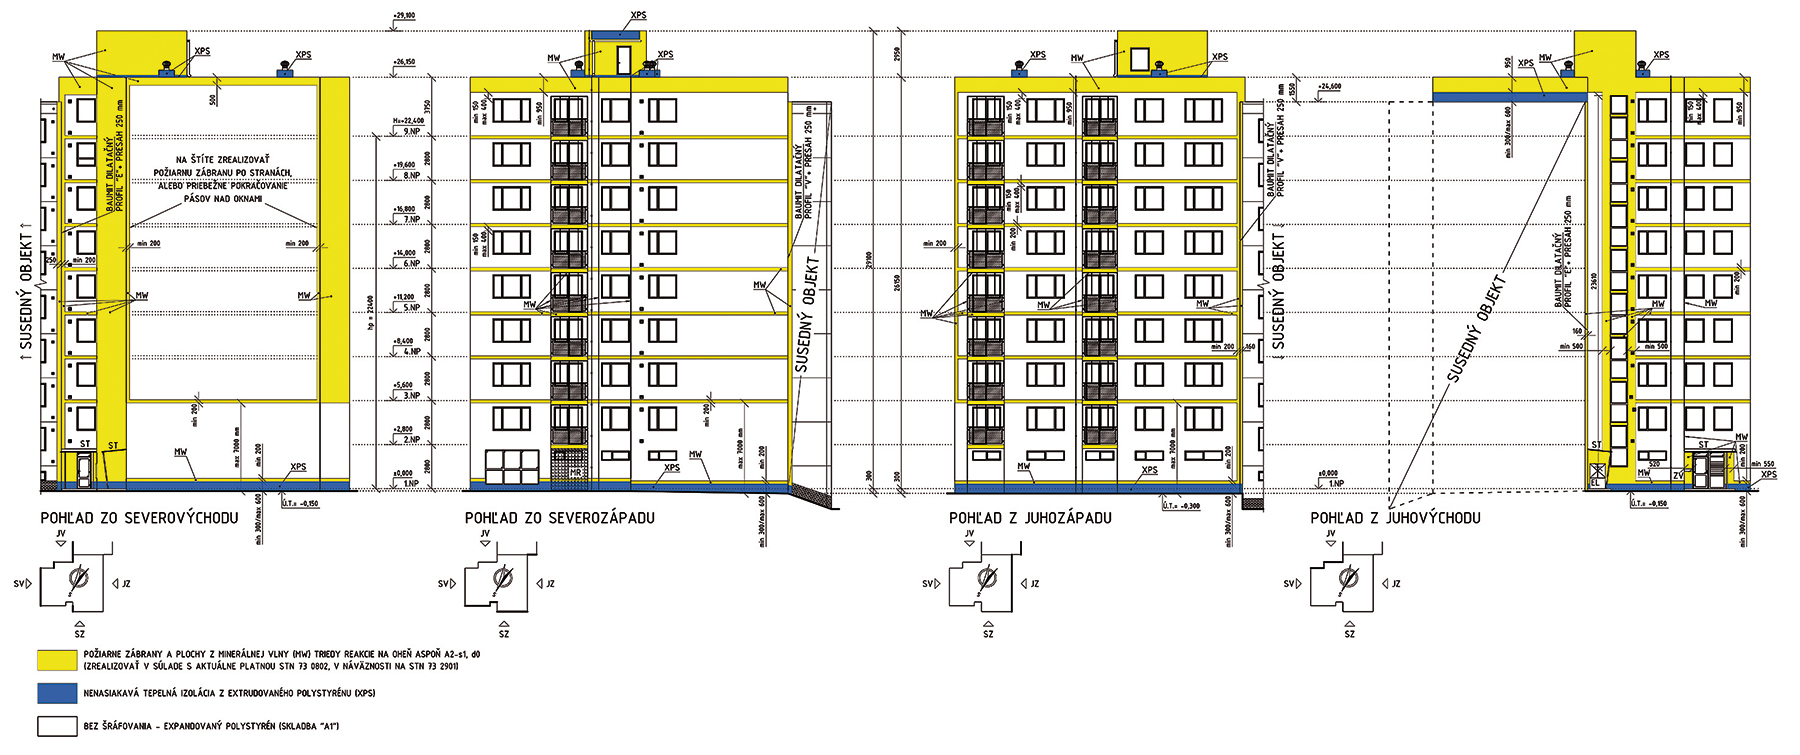 Modelový bytový dom 1 Bytový dom postavený v stavebnej sústave P1.14, rohový, 8 poschodí, 1 vchod. Plocha zateplenia obvodového plášťa: 1 501 m2. Hrúbka izolácie EPS, MW, požiarne zábrany (PZ) z MW: 160 mm.